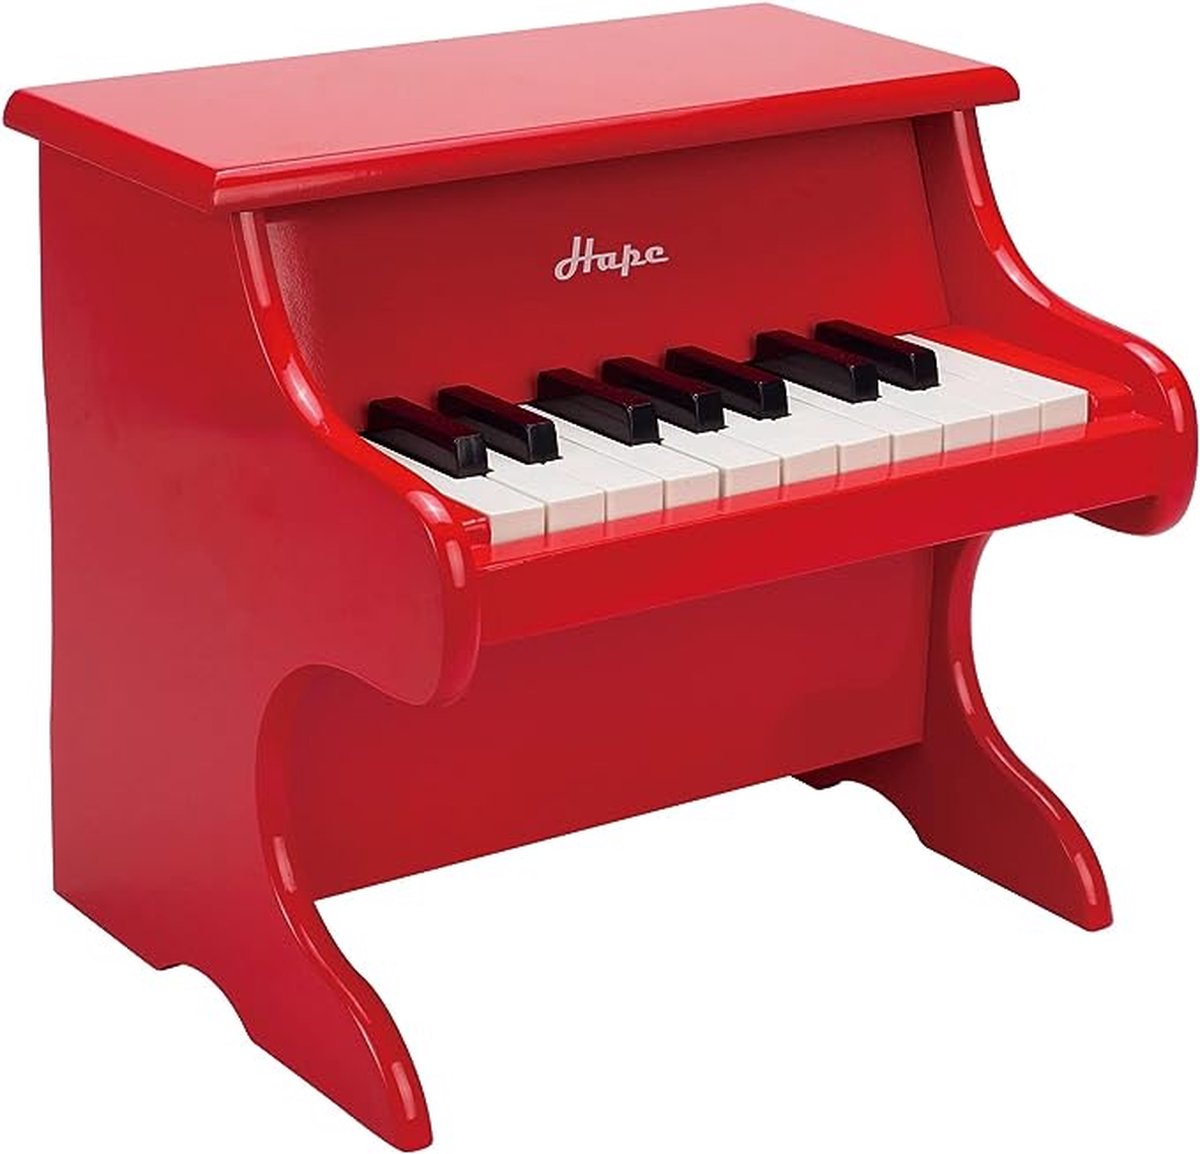 Piano pour enfants - Instrument de musique à clavier Kinder 18 touches -  Toy Piano 3+